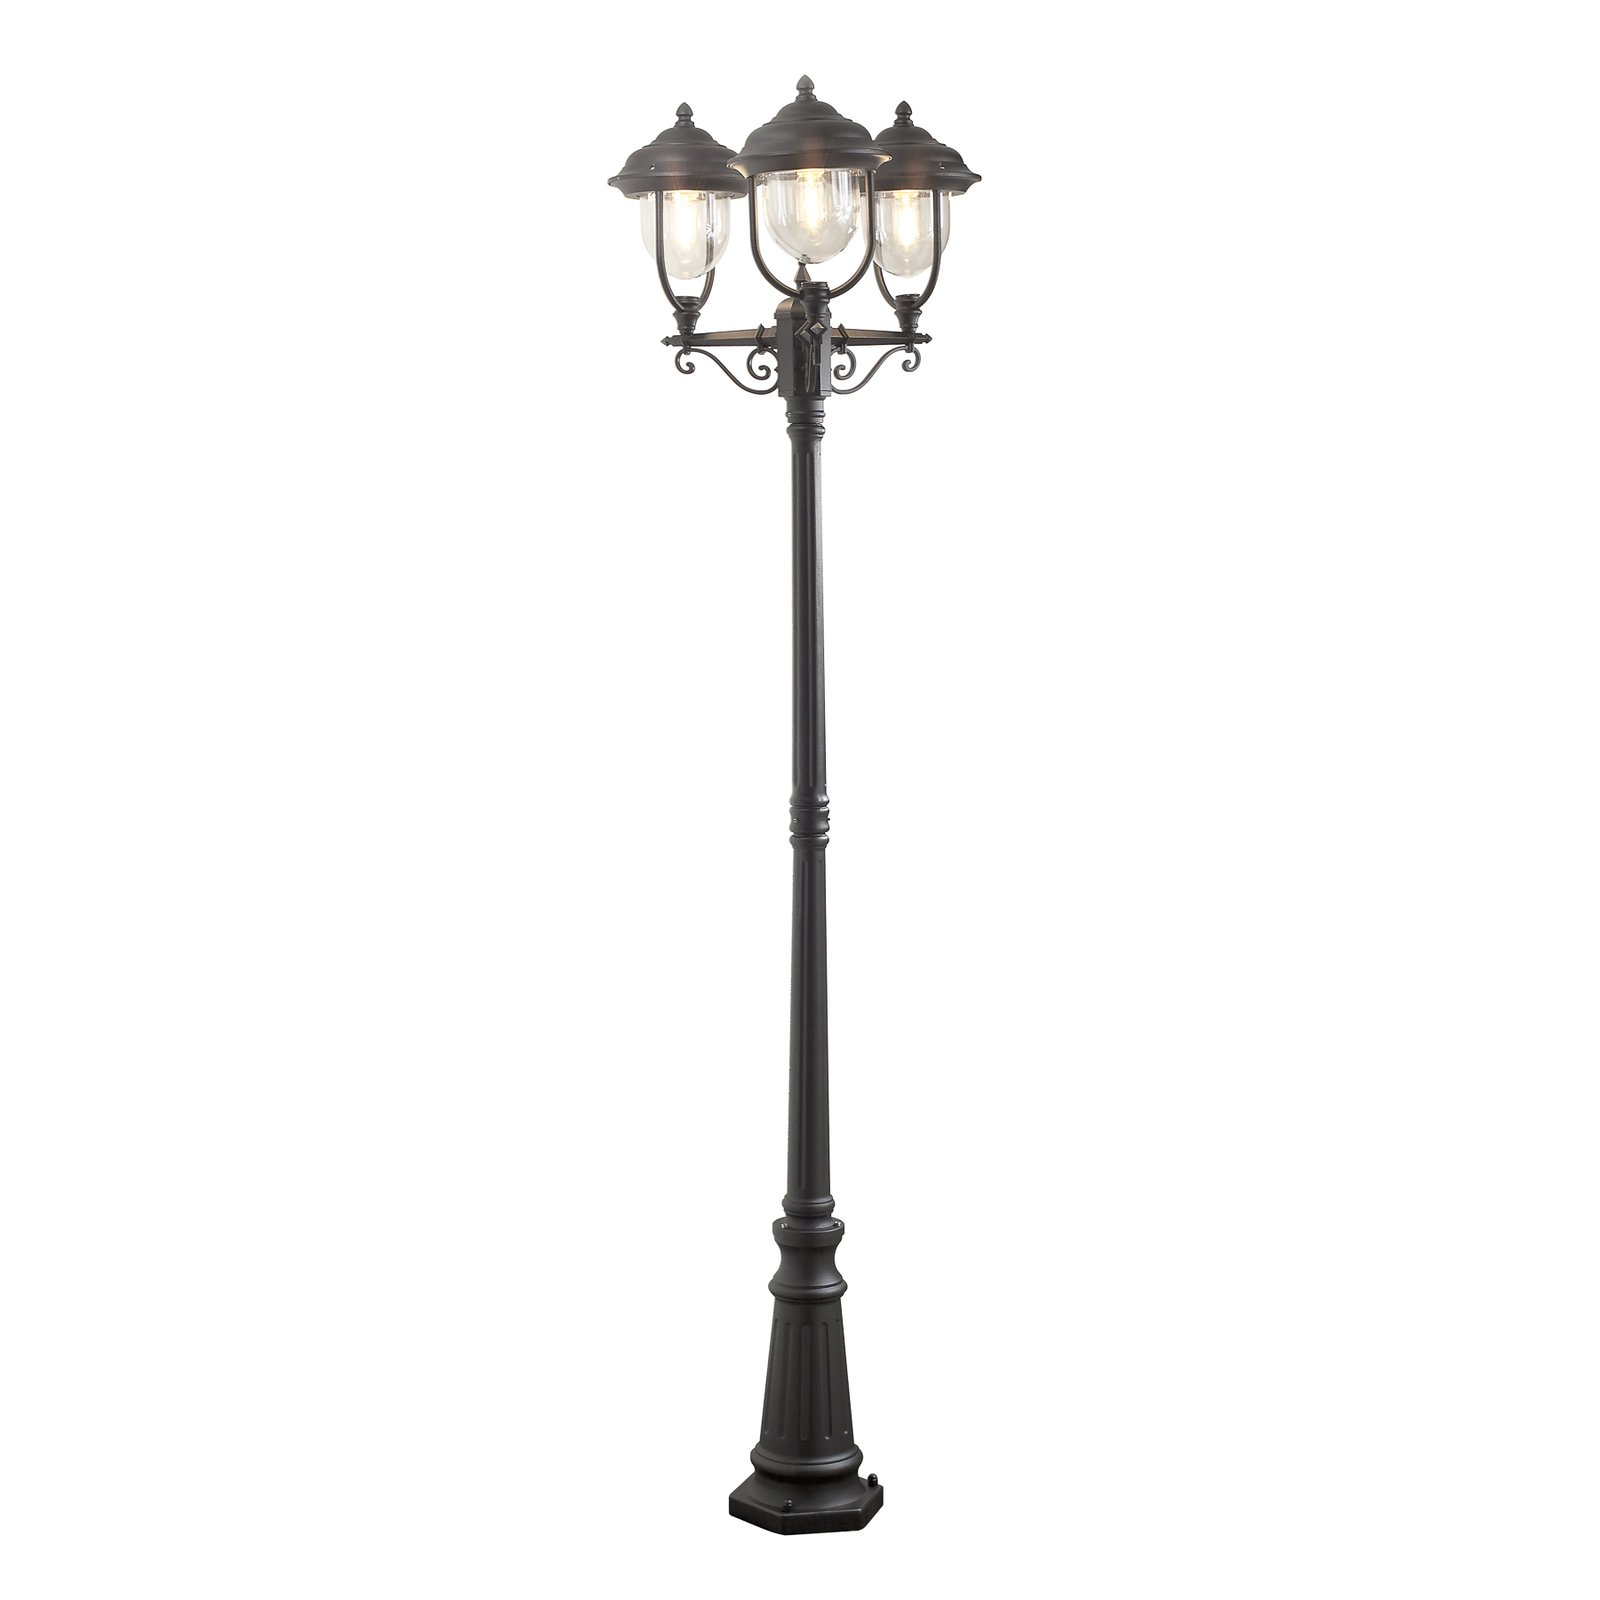 Parma lamp post 3-bulb in black